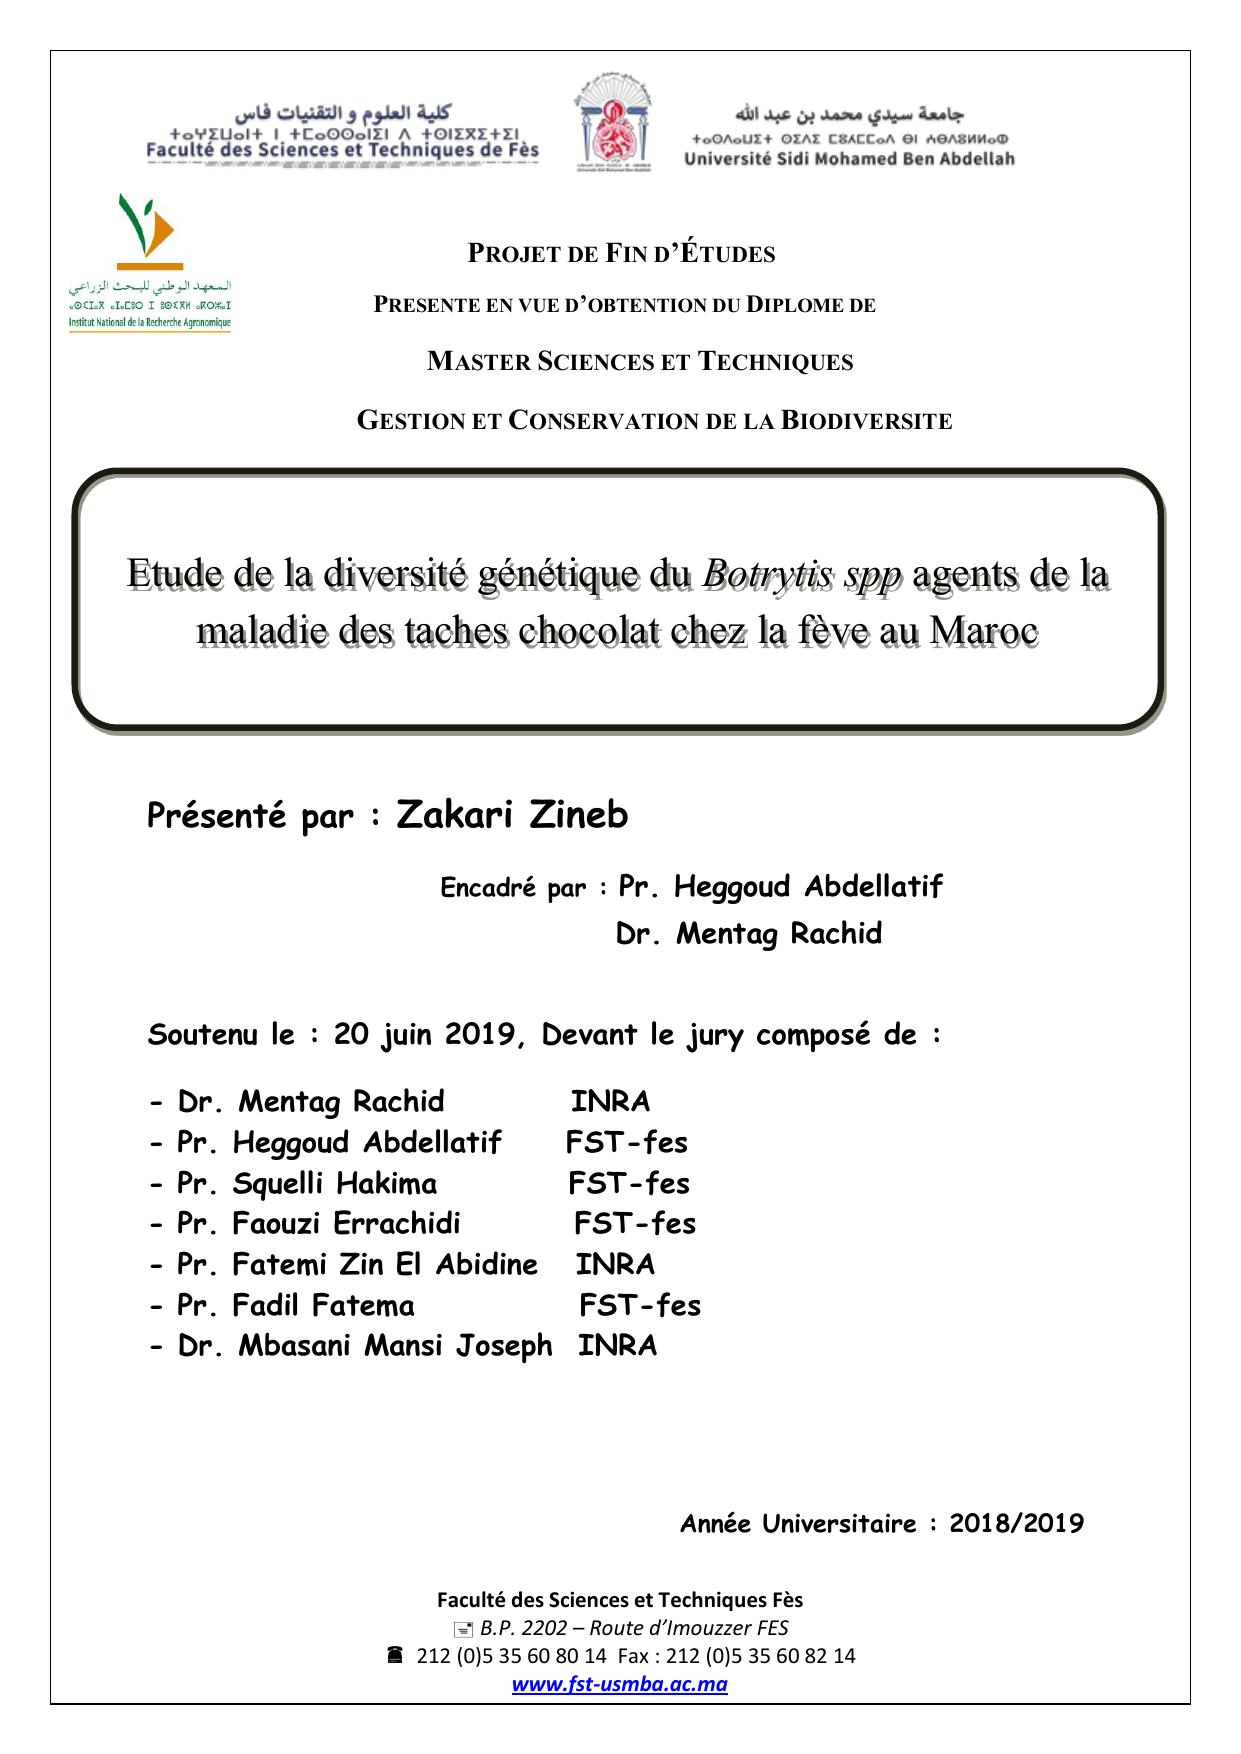 Etude de la diversité génétique du Botrytis spp agents de la maladie des taches chocolat chez la fève au Maroc